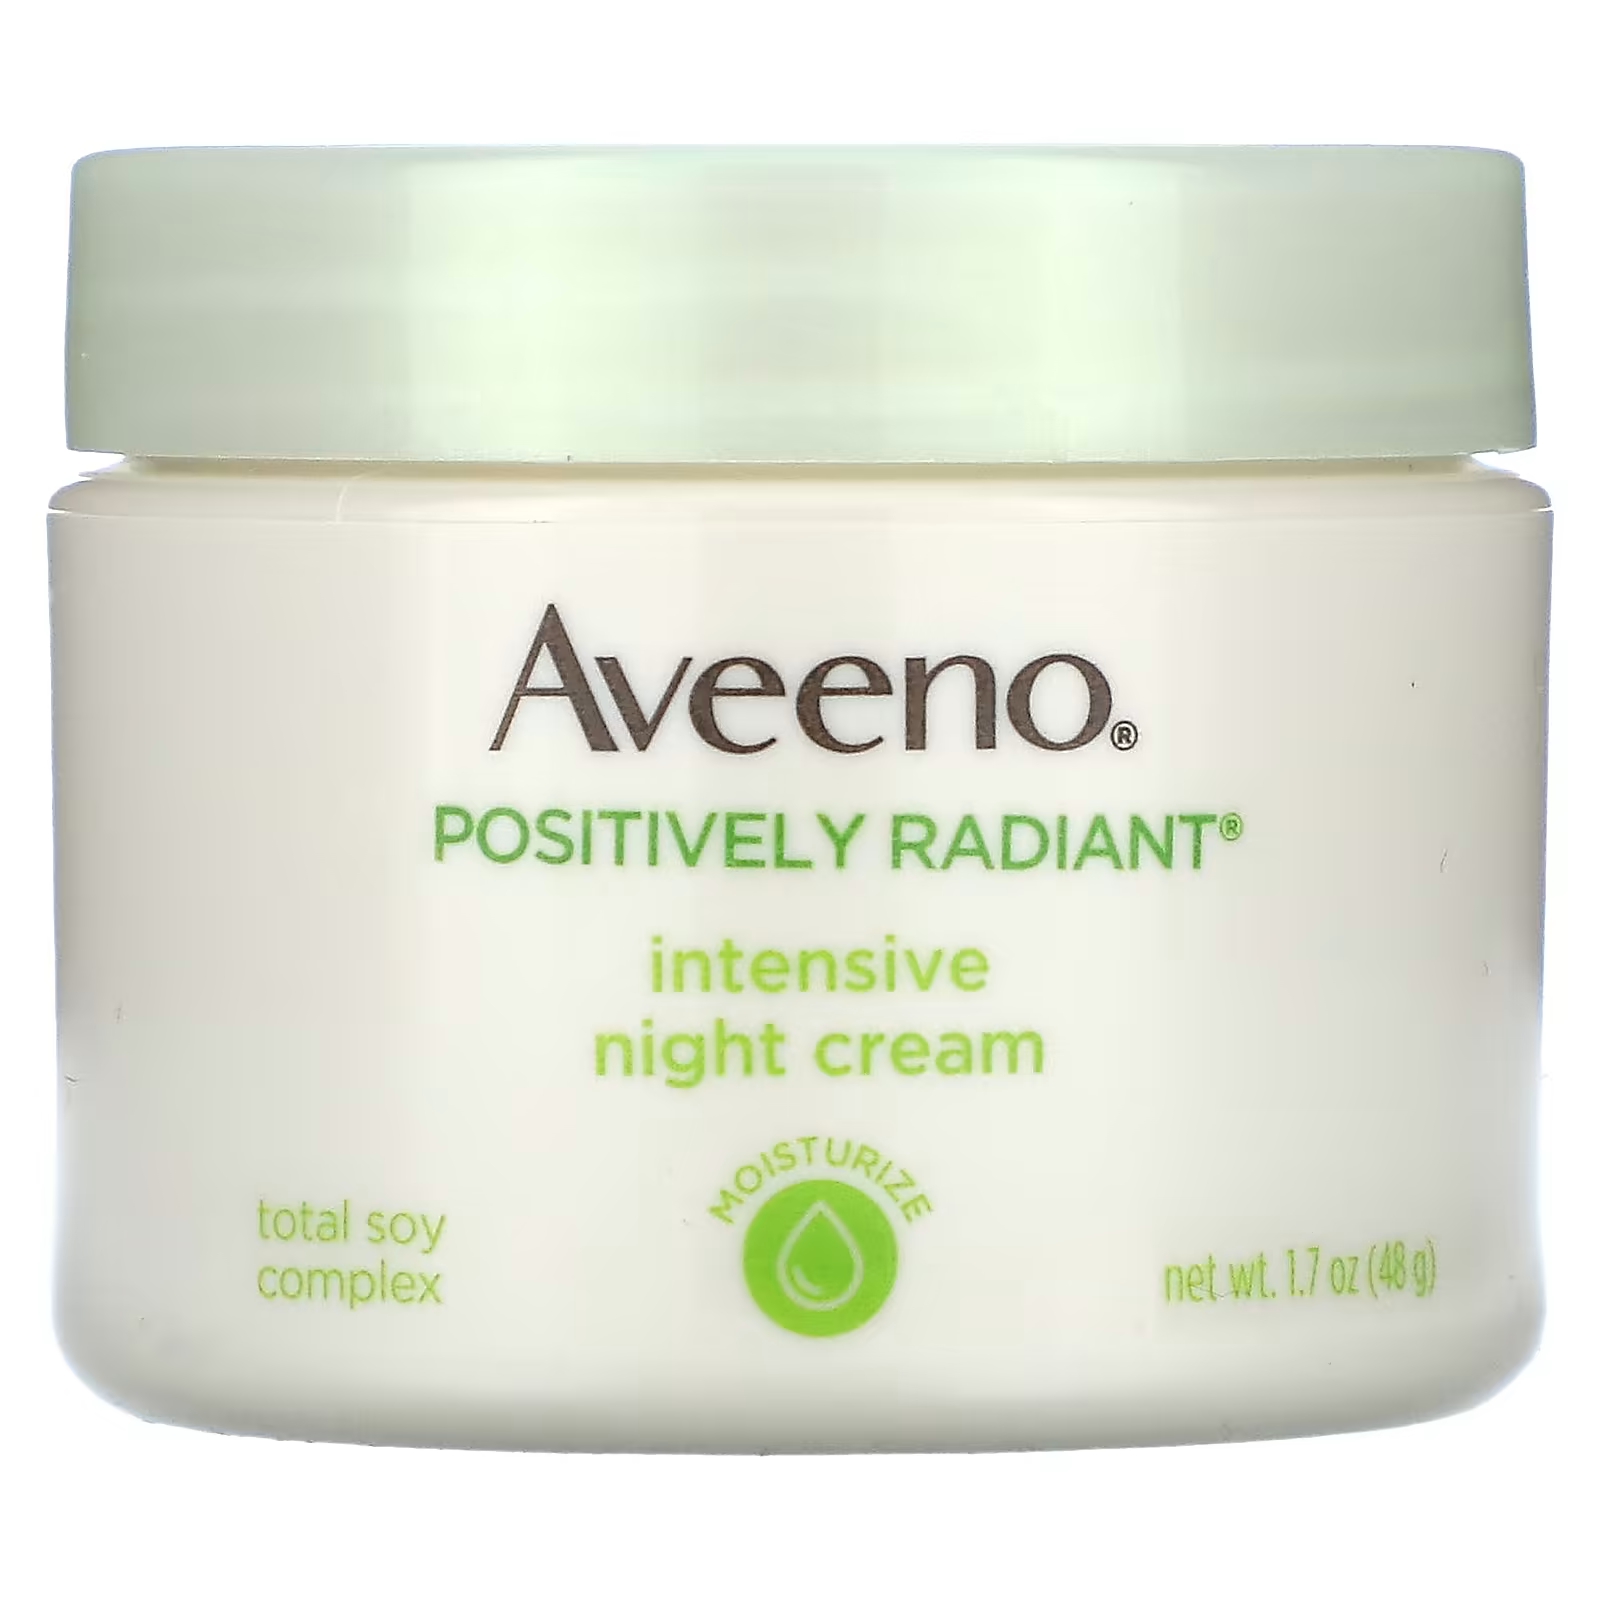 Крем для лица Aveeno ночной интенсивный, 48 г aveeno positively radiant интенсивный ночной крем 48 г 1 7 унции